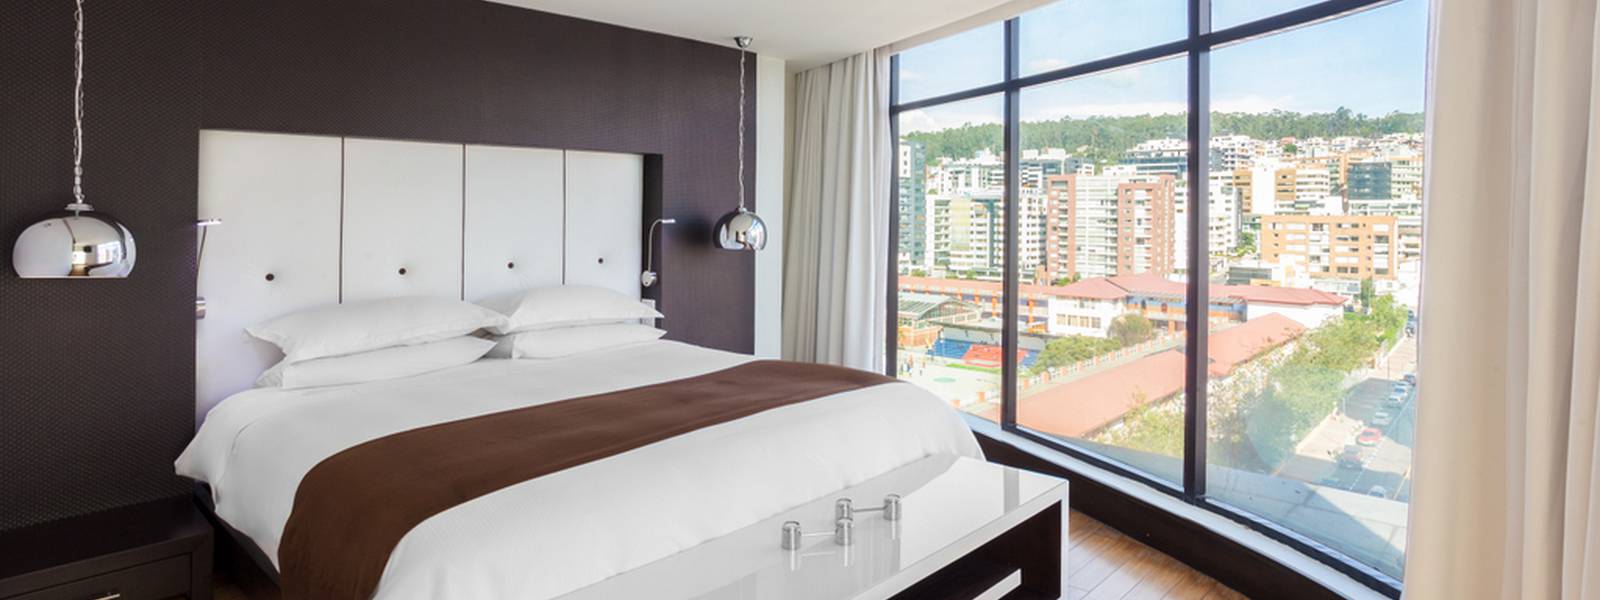 Habitación - Hotel Leparc - Quito